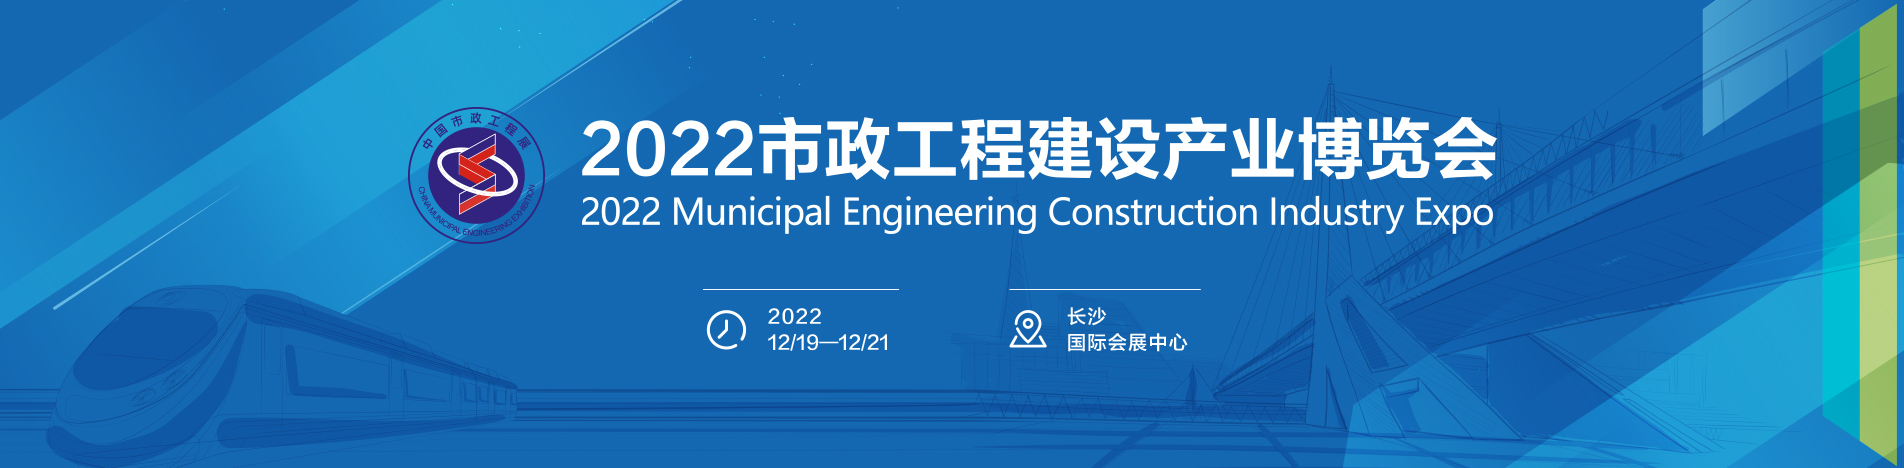 智慧加速迭代 耕耘收获风采:2023中国市政工程建设与智慧环卫装备展览会